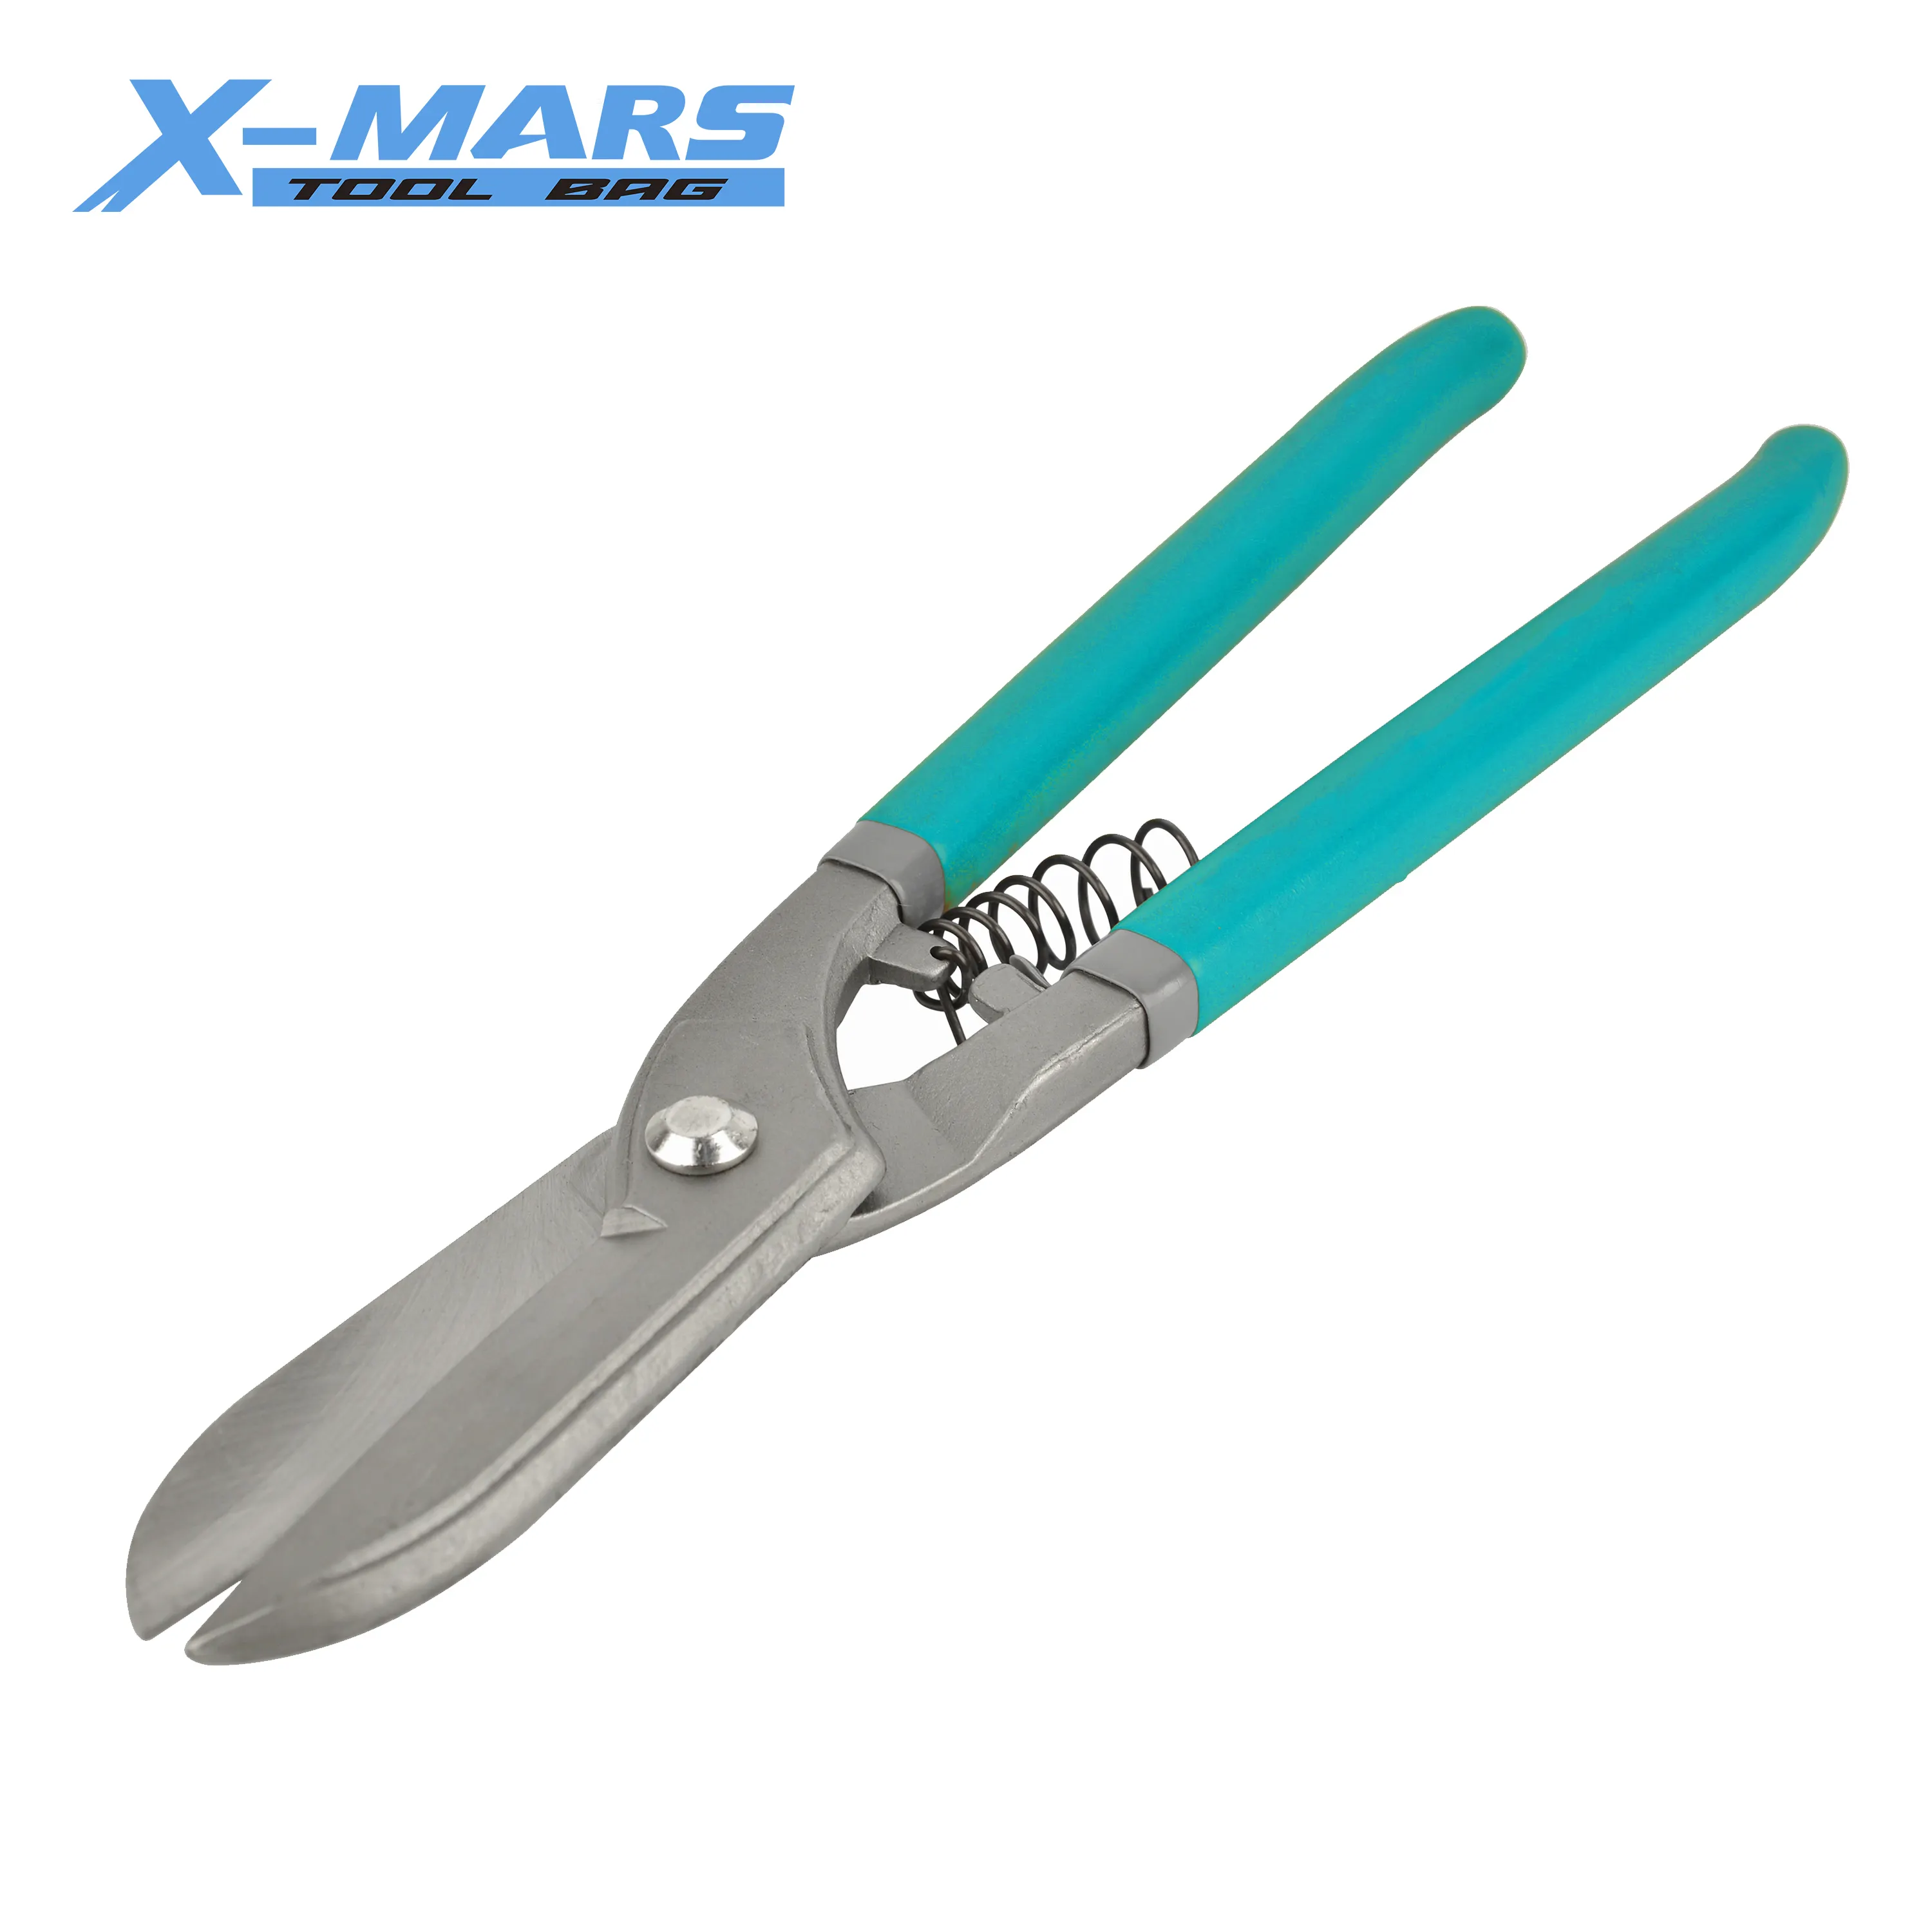 X-mars tinman snips tipo alemanha, futebol de estanho, alta qualidade, folha de ferro, forjado inteiramente, ferramentas de clipping